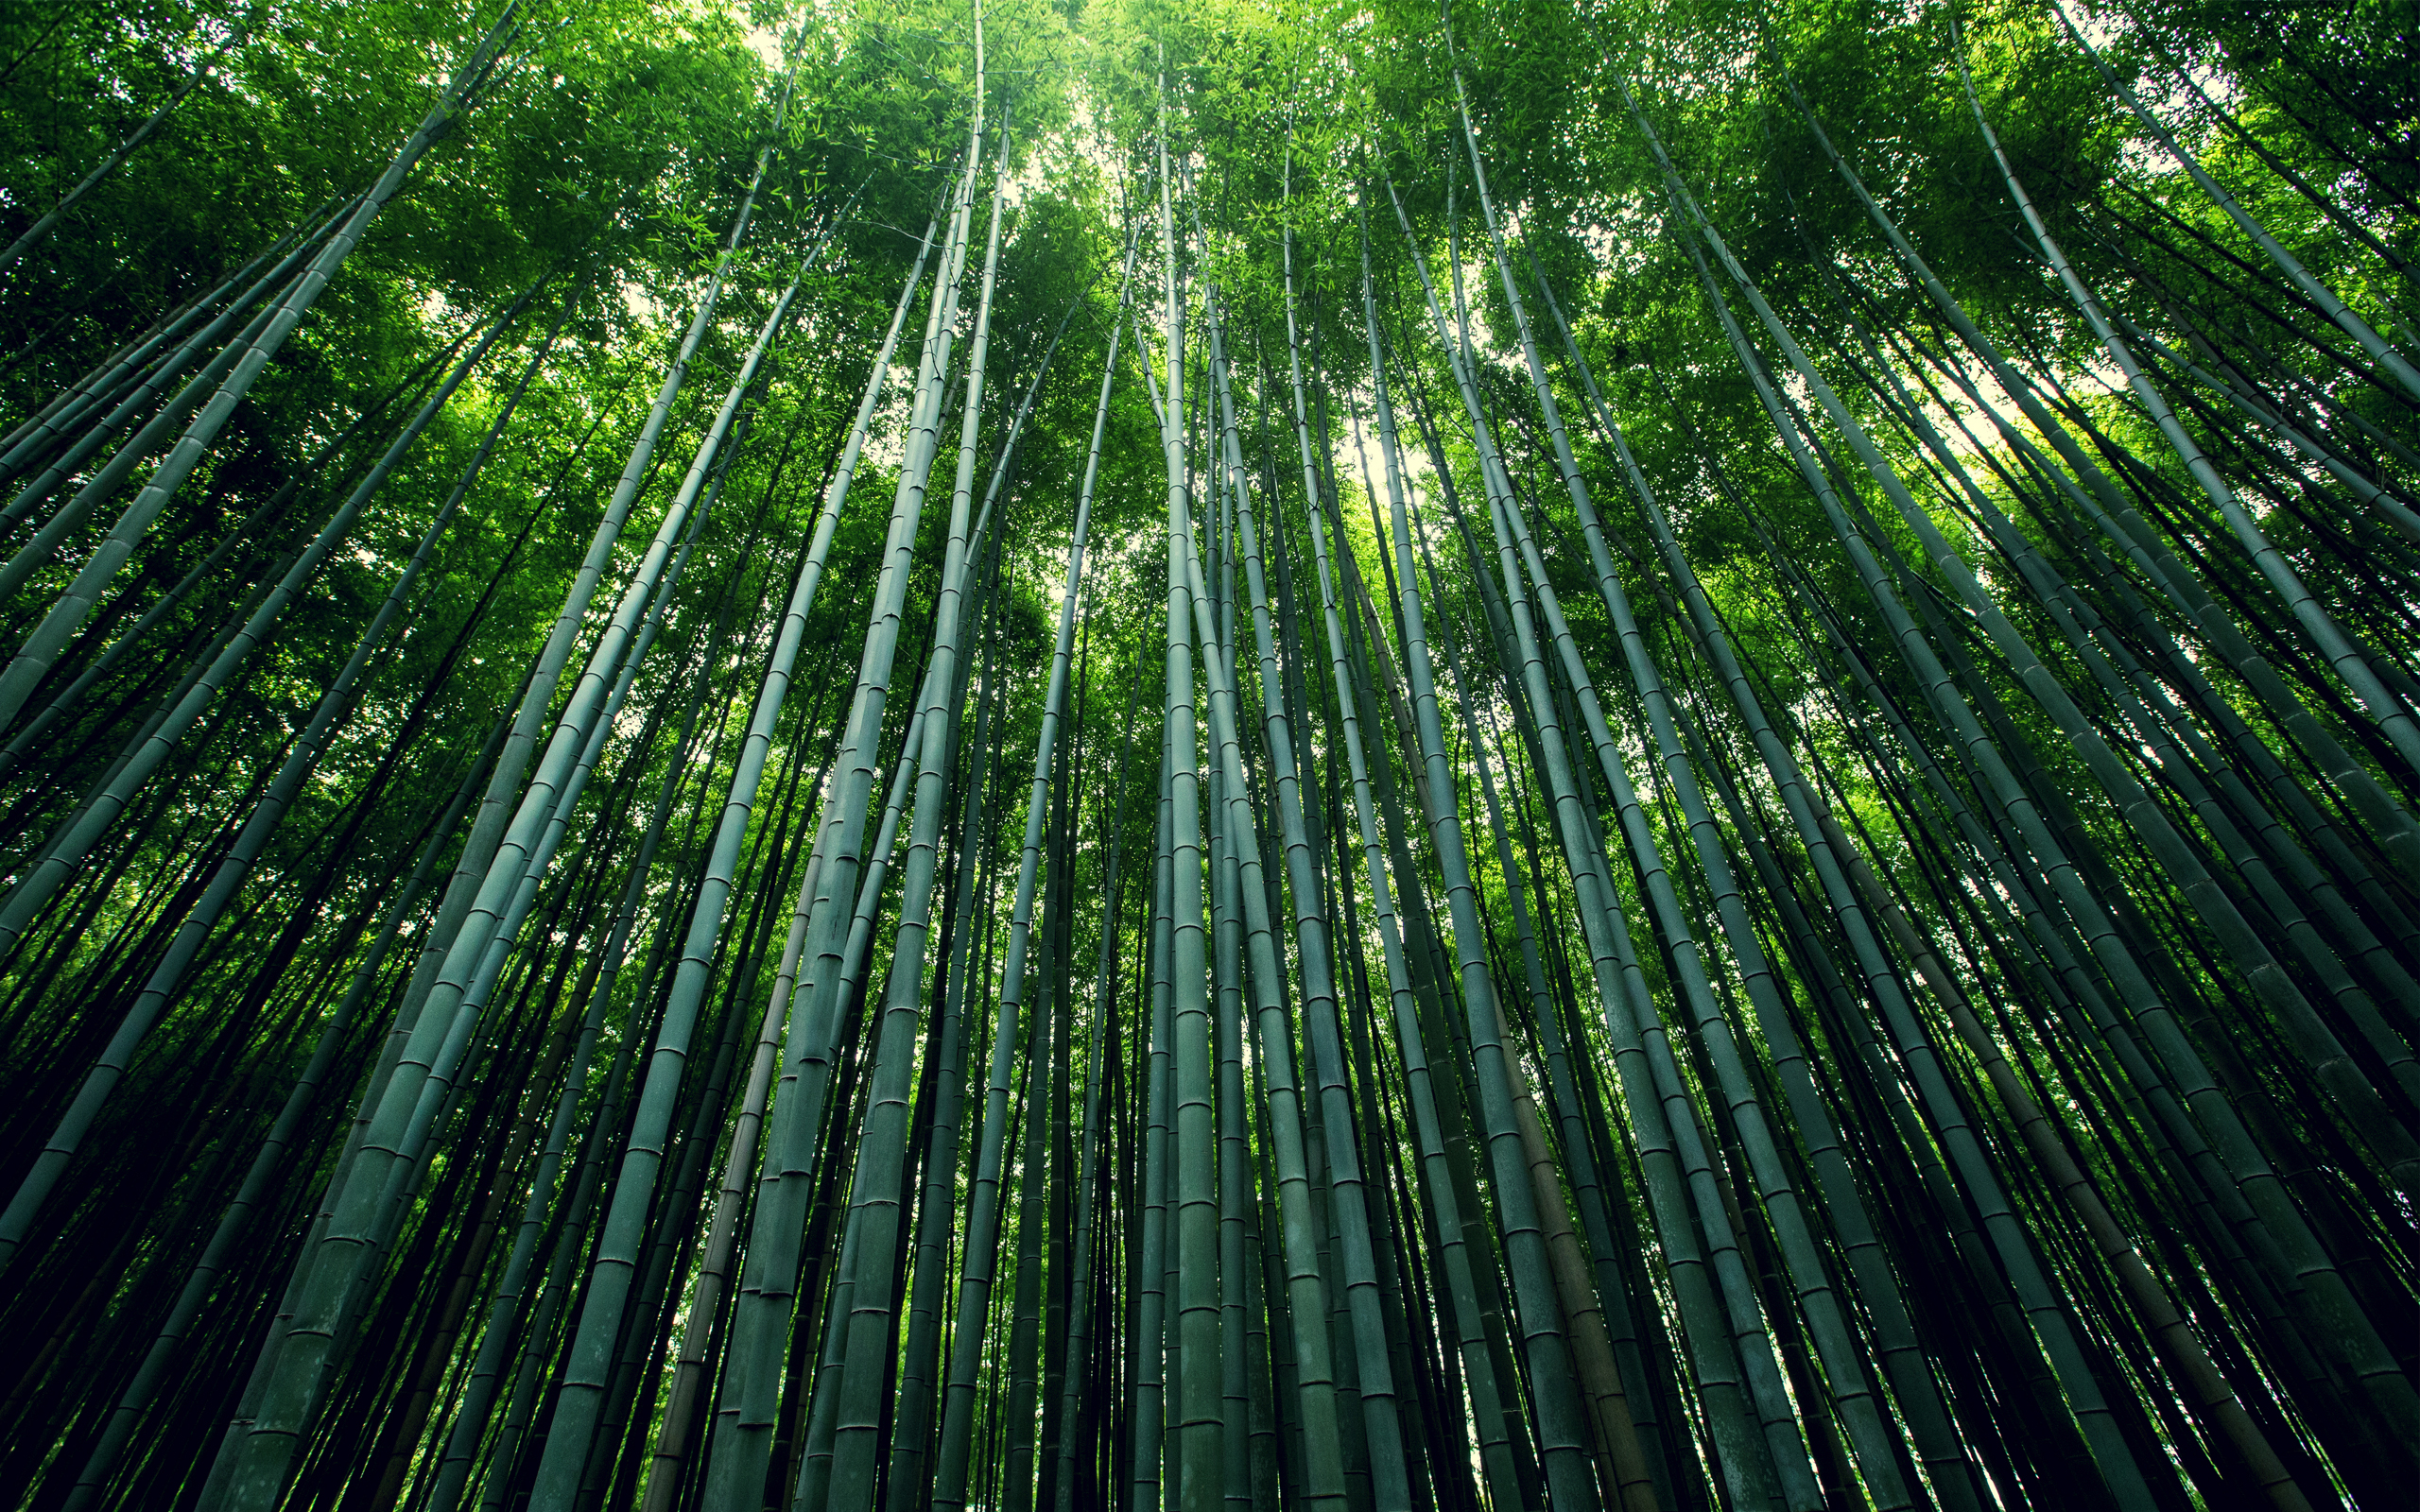 papier peint en bambou,bambou,vert,arbre,forêt,plante